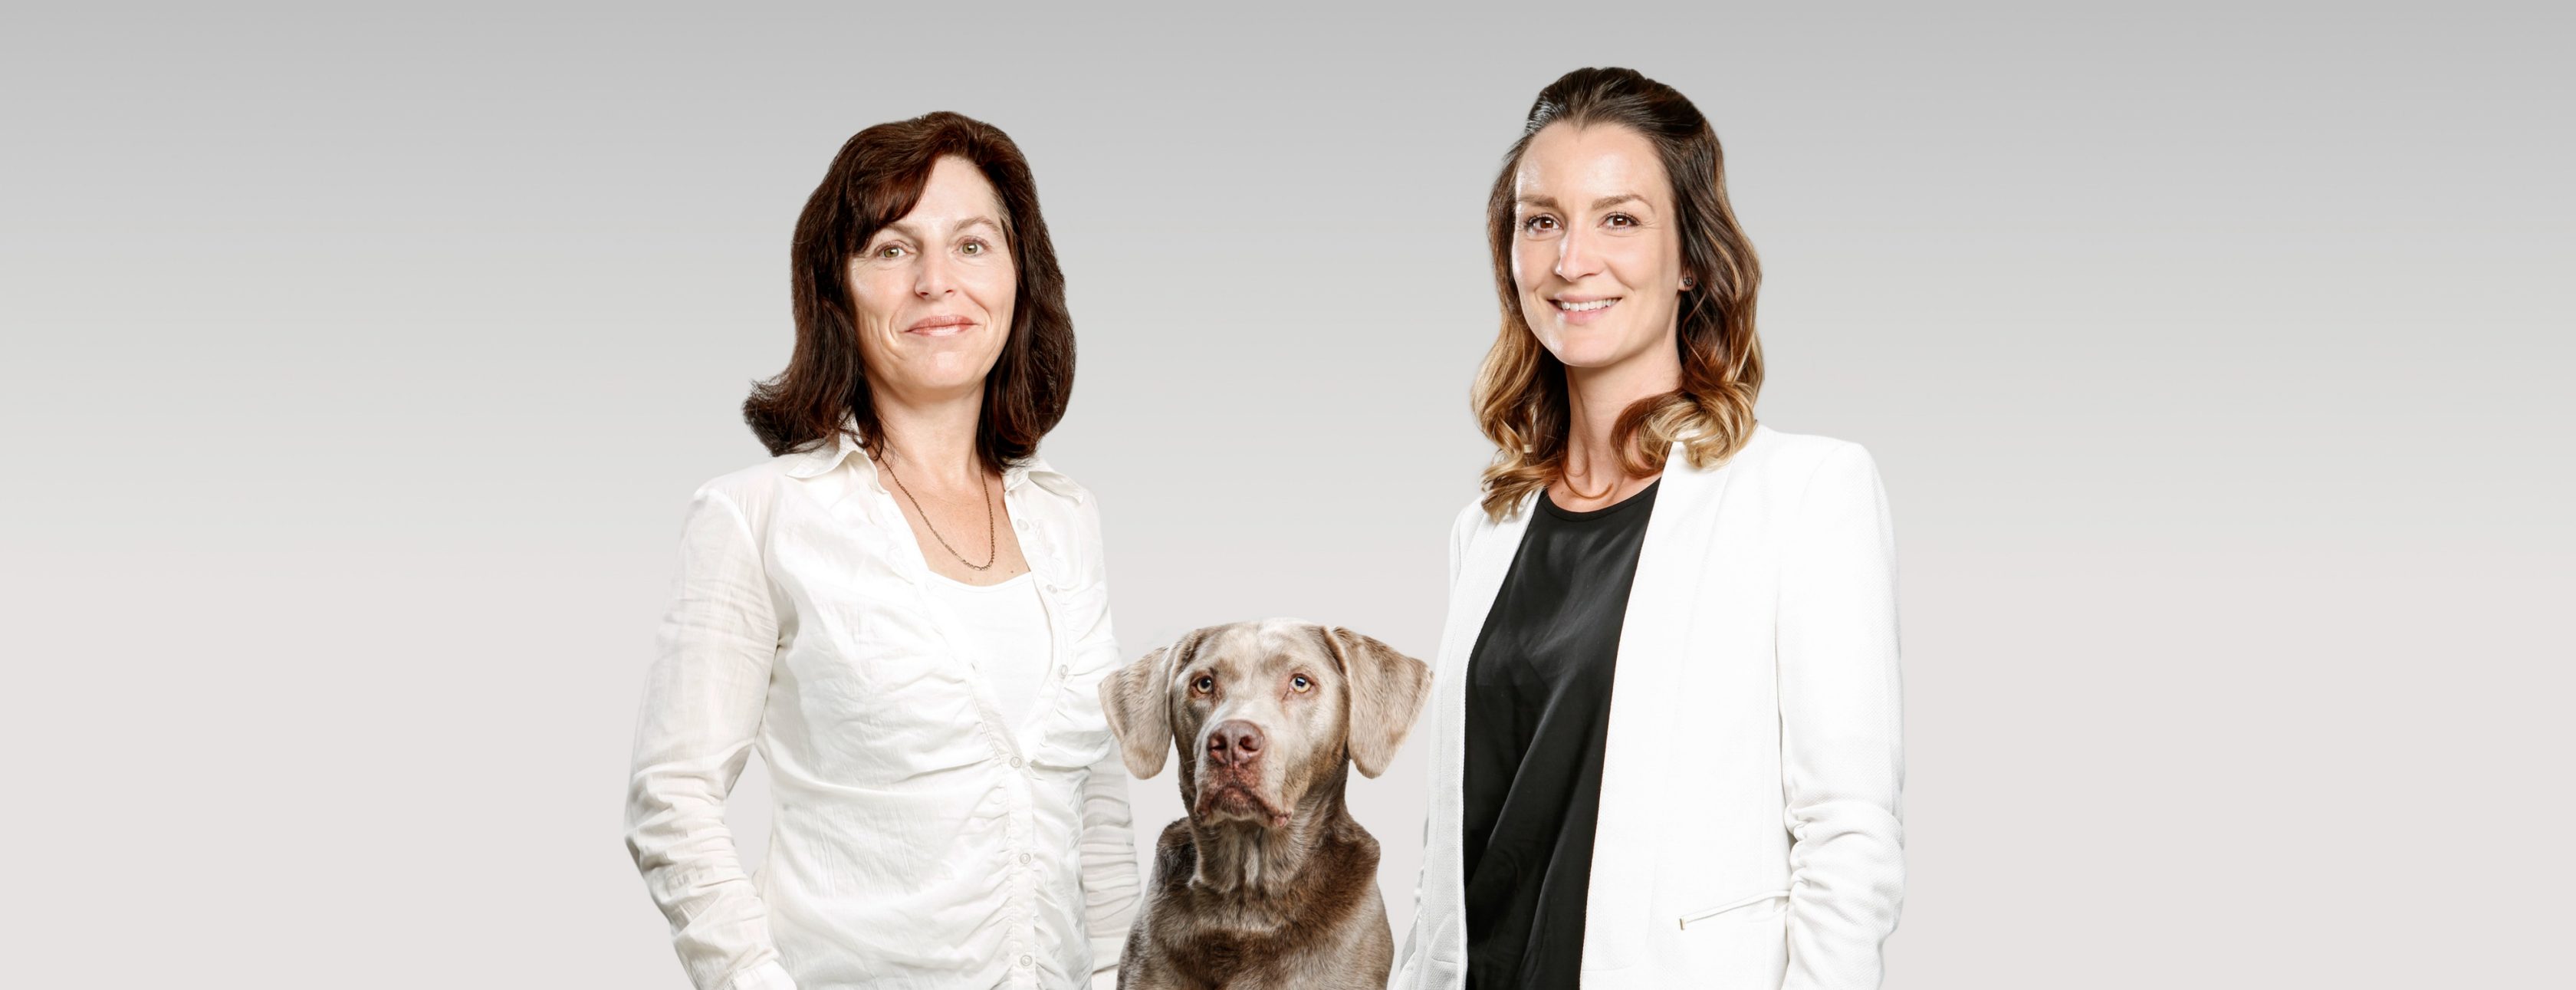 Allianz Versicherung Stefanie Kuhs Dallgow-Döberitz - Profilbild Agenturteam